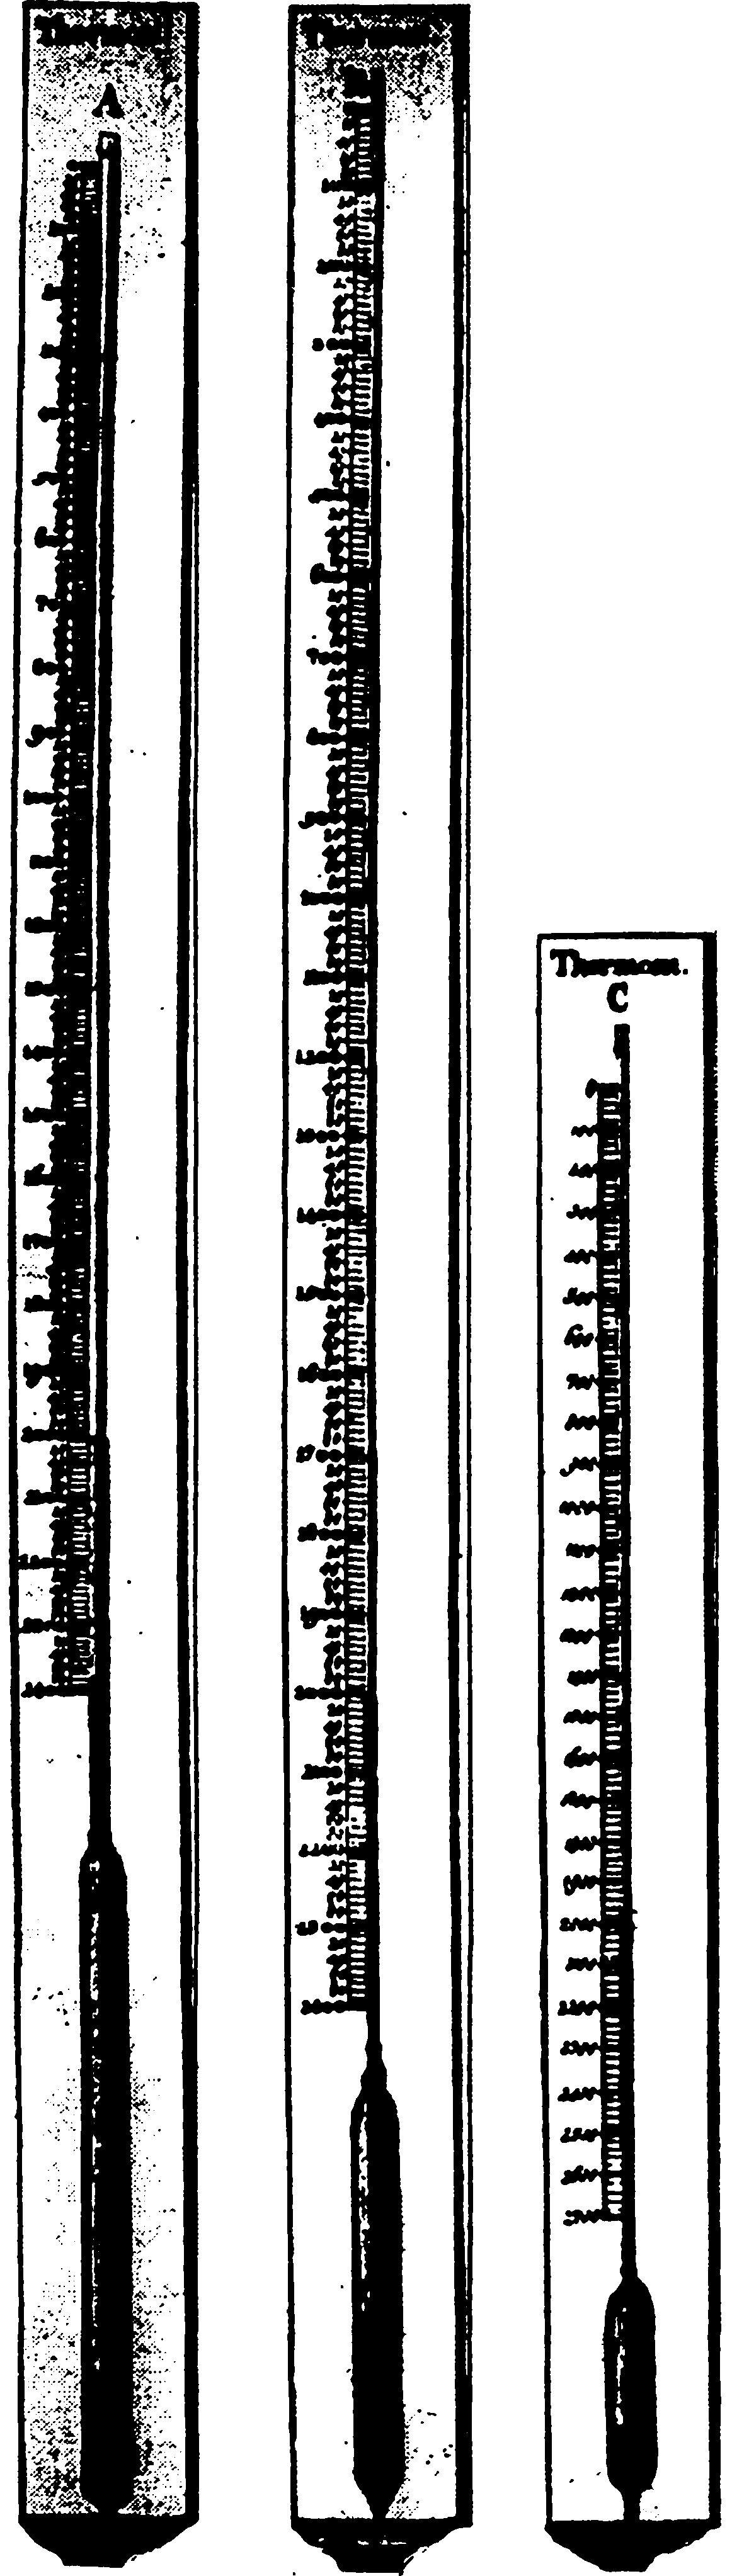 Термометр Ж.Н. Делиля. Такими ртутными термометрами пользовались петербургские ученые XVIII в.